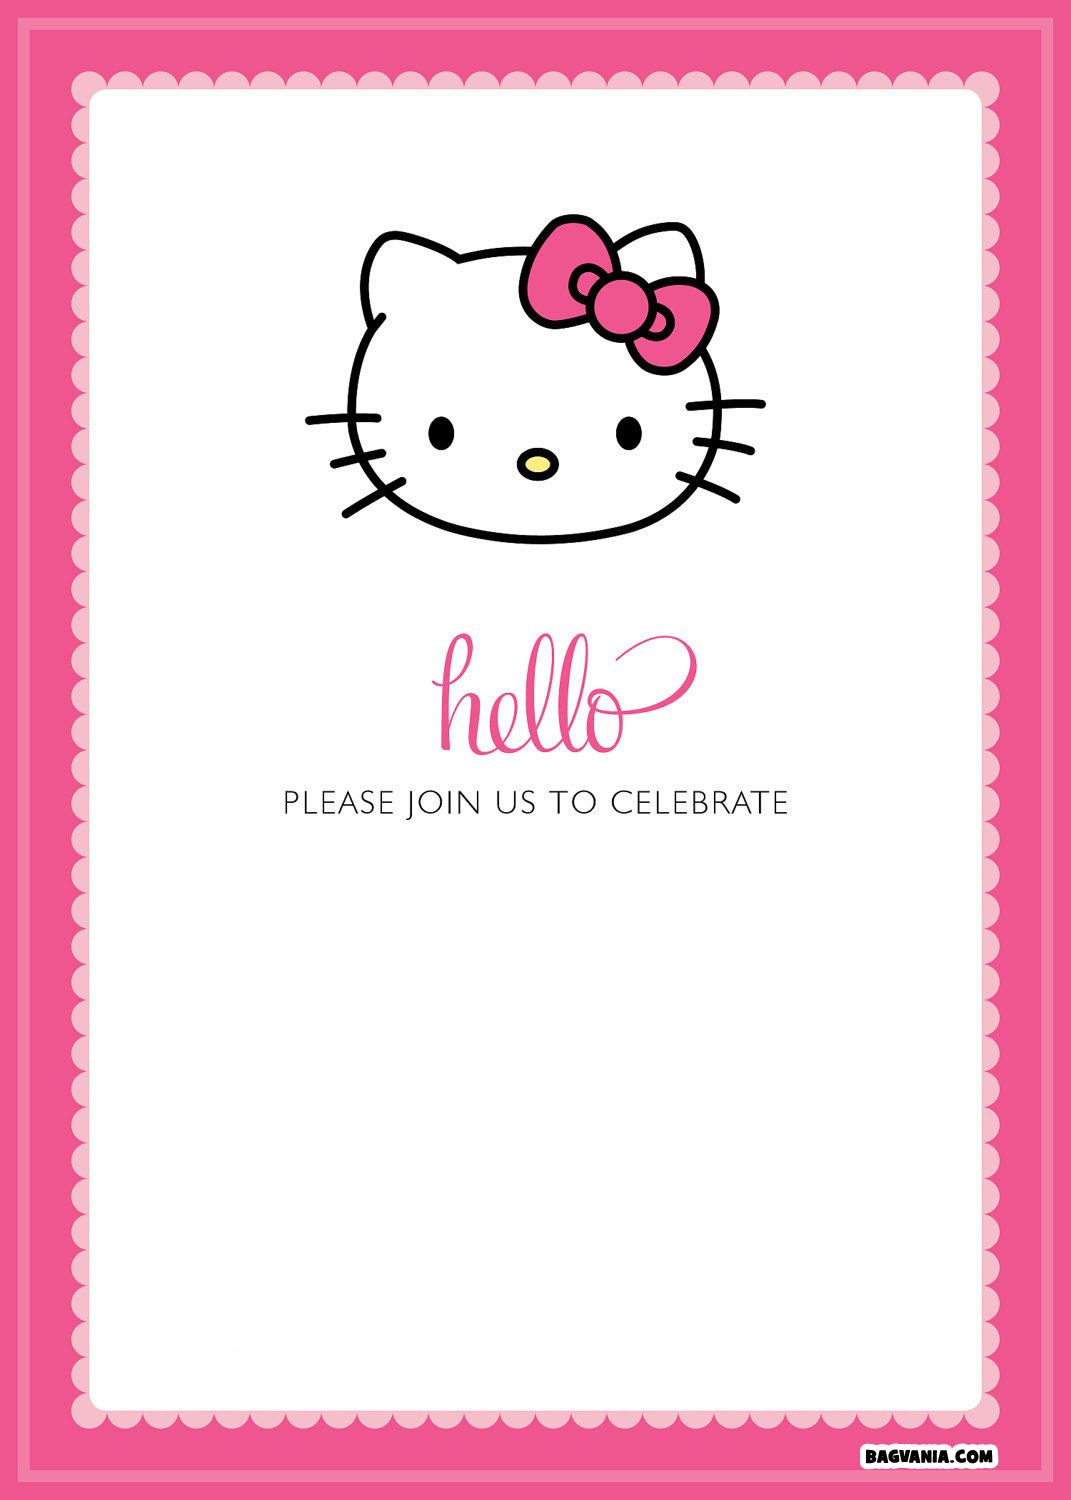 Free Printable Hello Kitty Birthday Invitations Bagvania Free throughout proportions 1071 X 1500